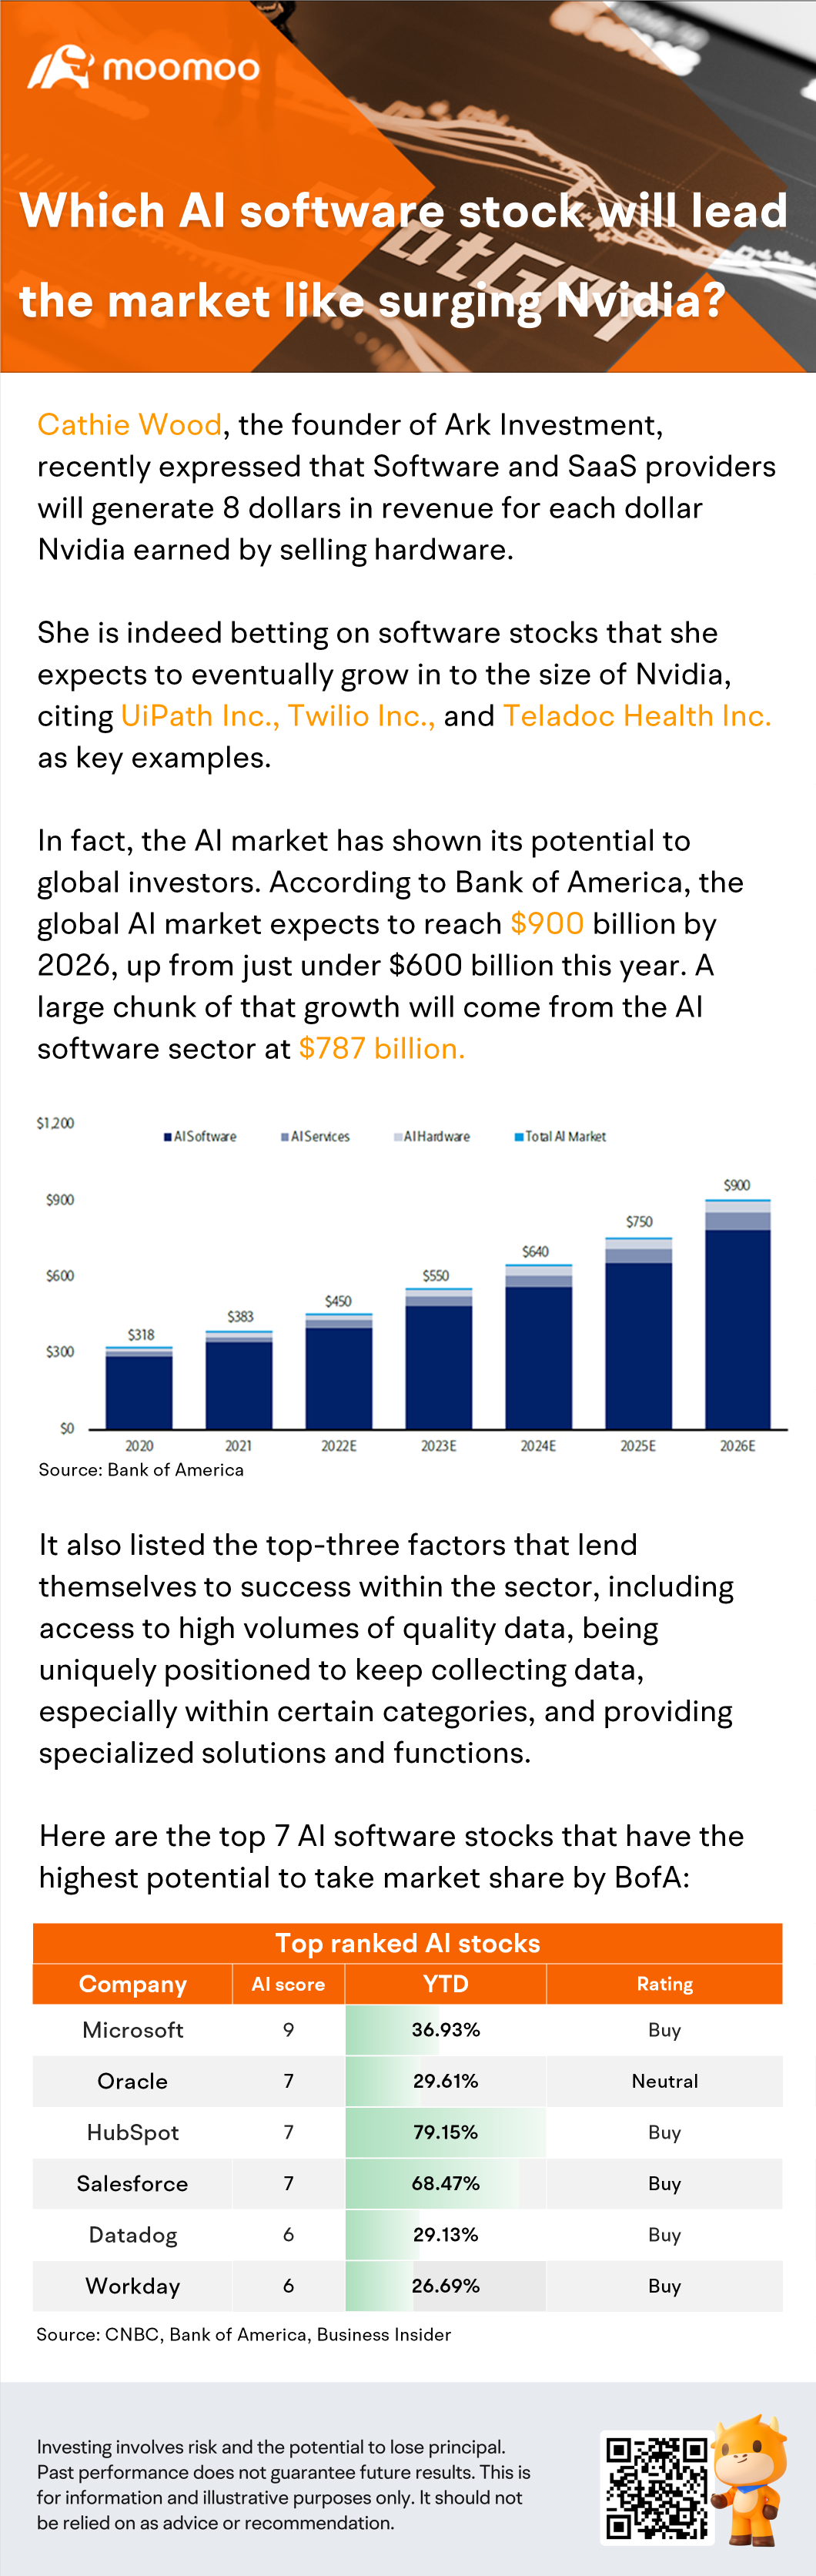 哪只人工智能软件股票将像飙升的英伟达一样引领市场？